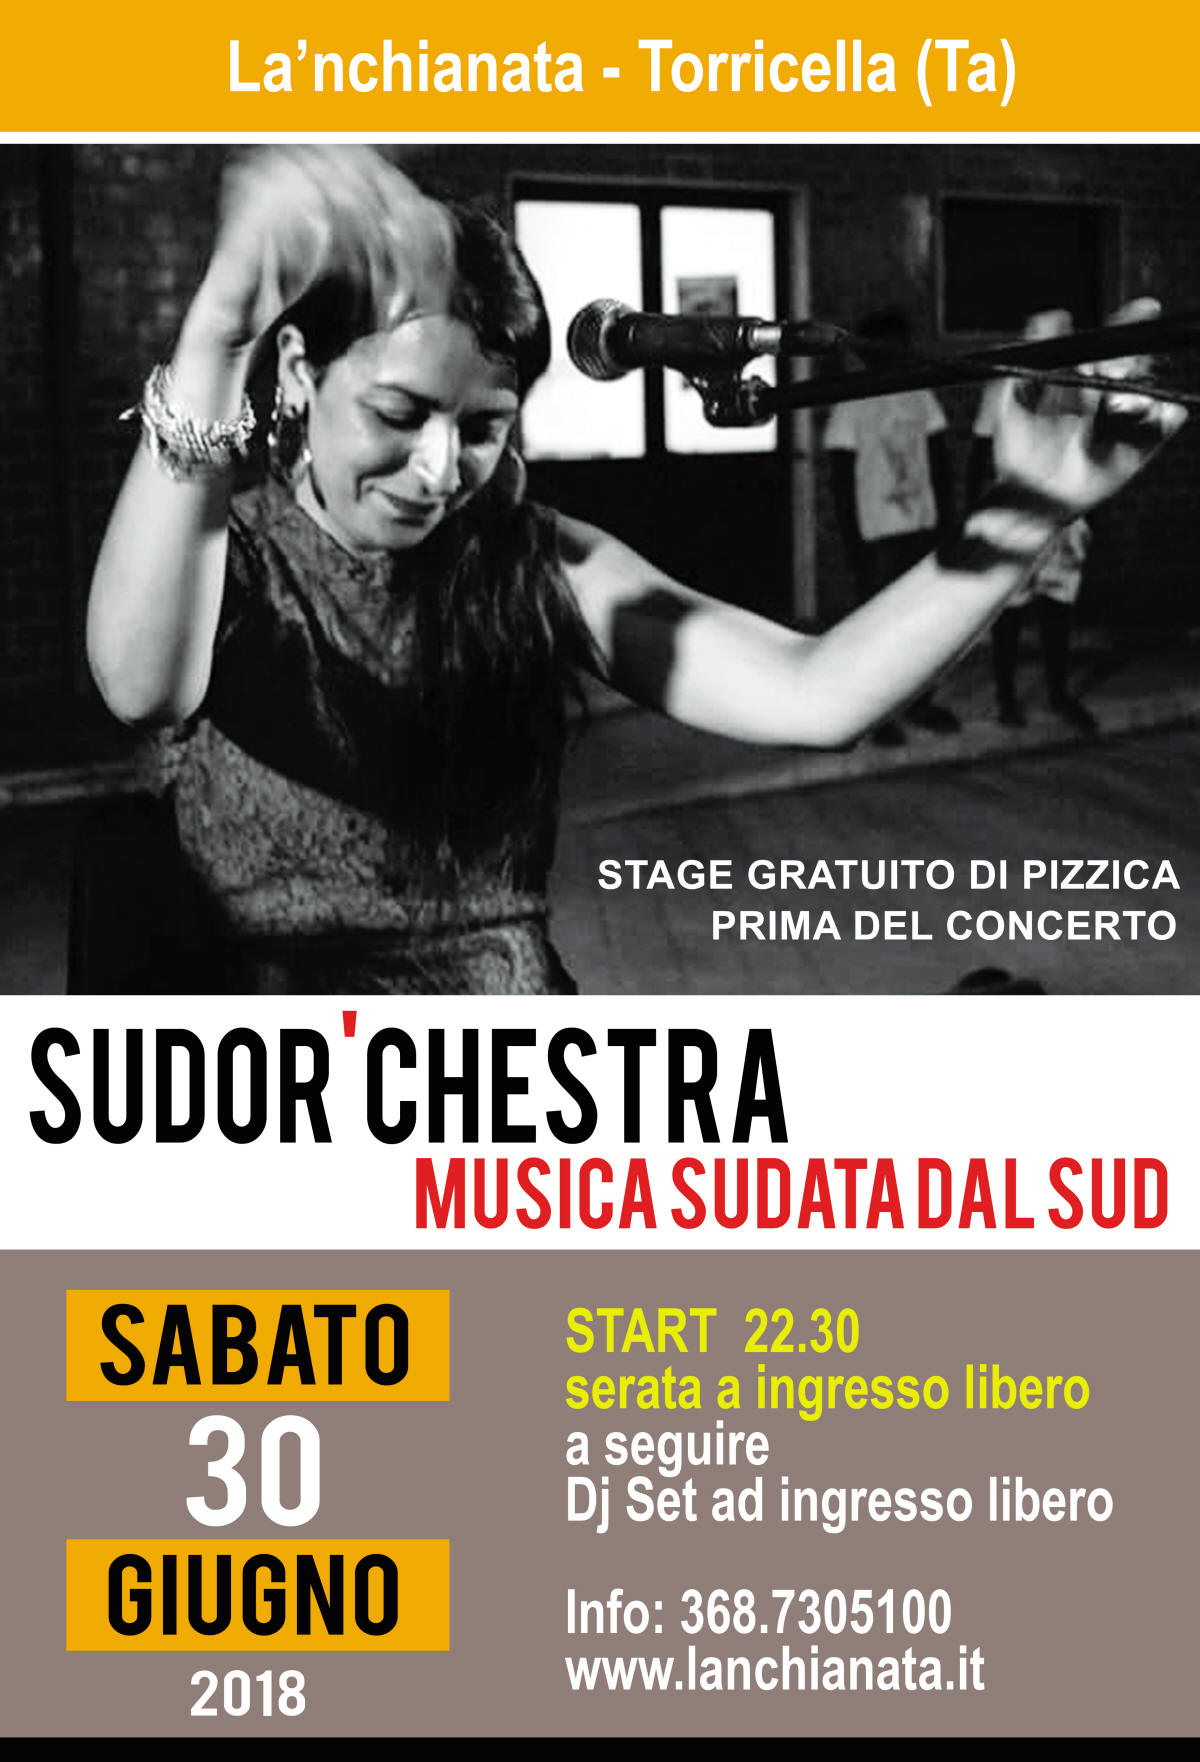 TORRICELLA. “Sudor’chestra” in concerto oggi, sabato 30 giugno, a La’nchianata, nell’ambito del Popularia Festival 2018